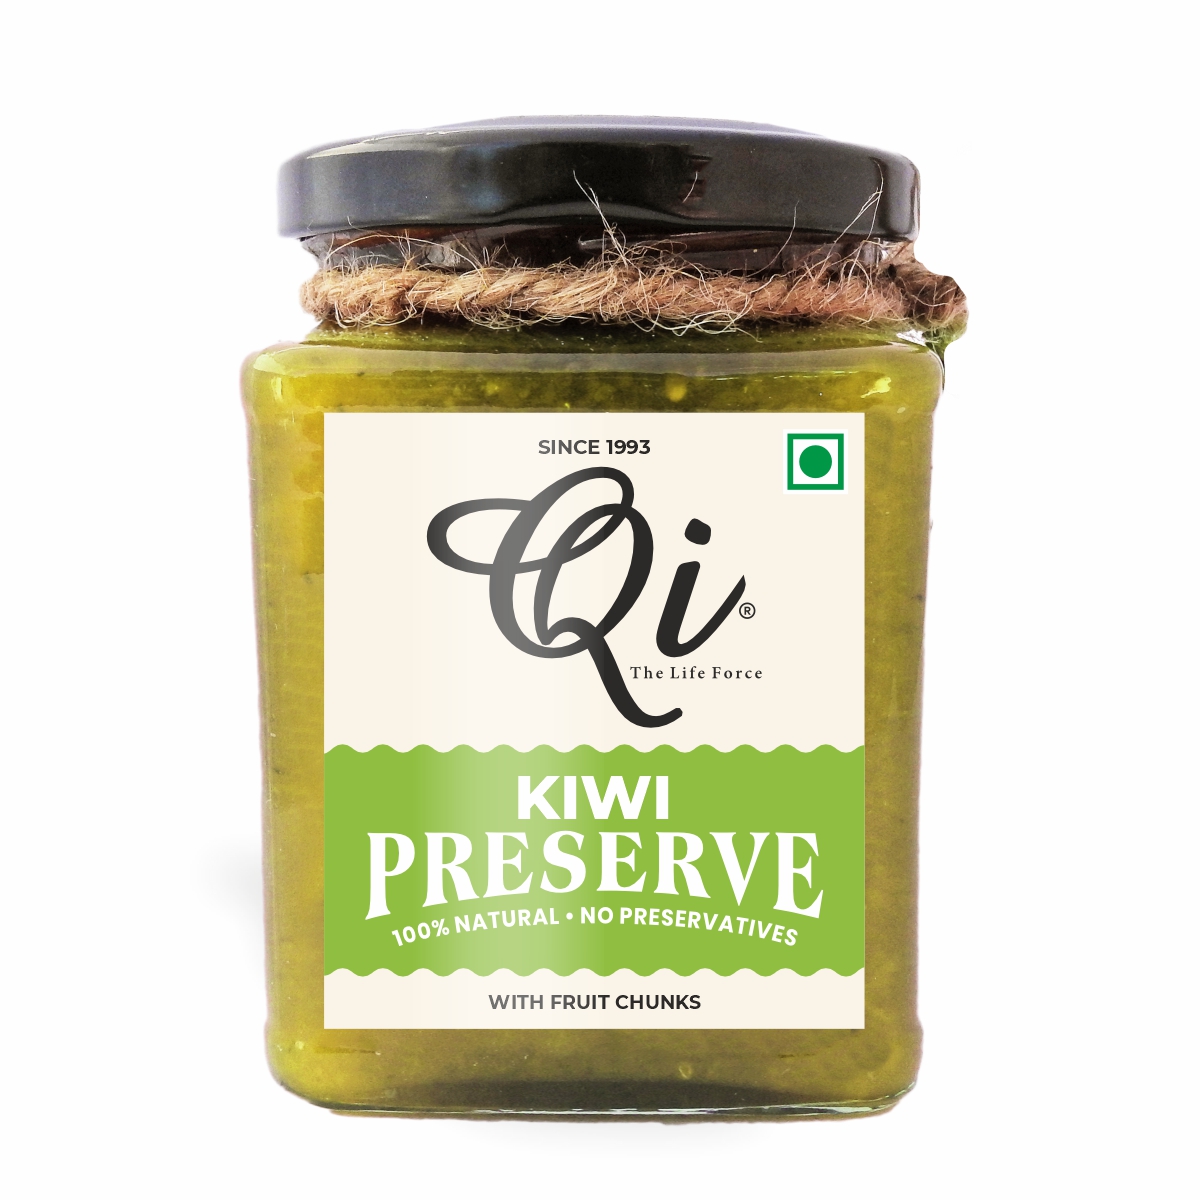 Minchy's Kiwi Preserve